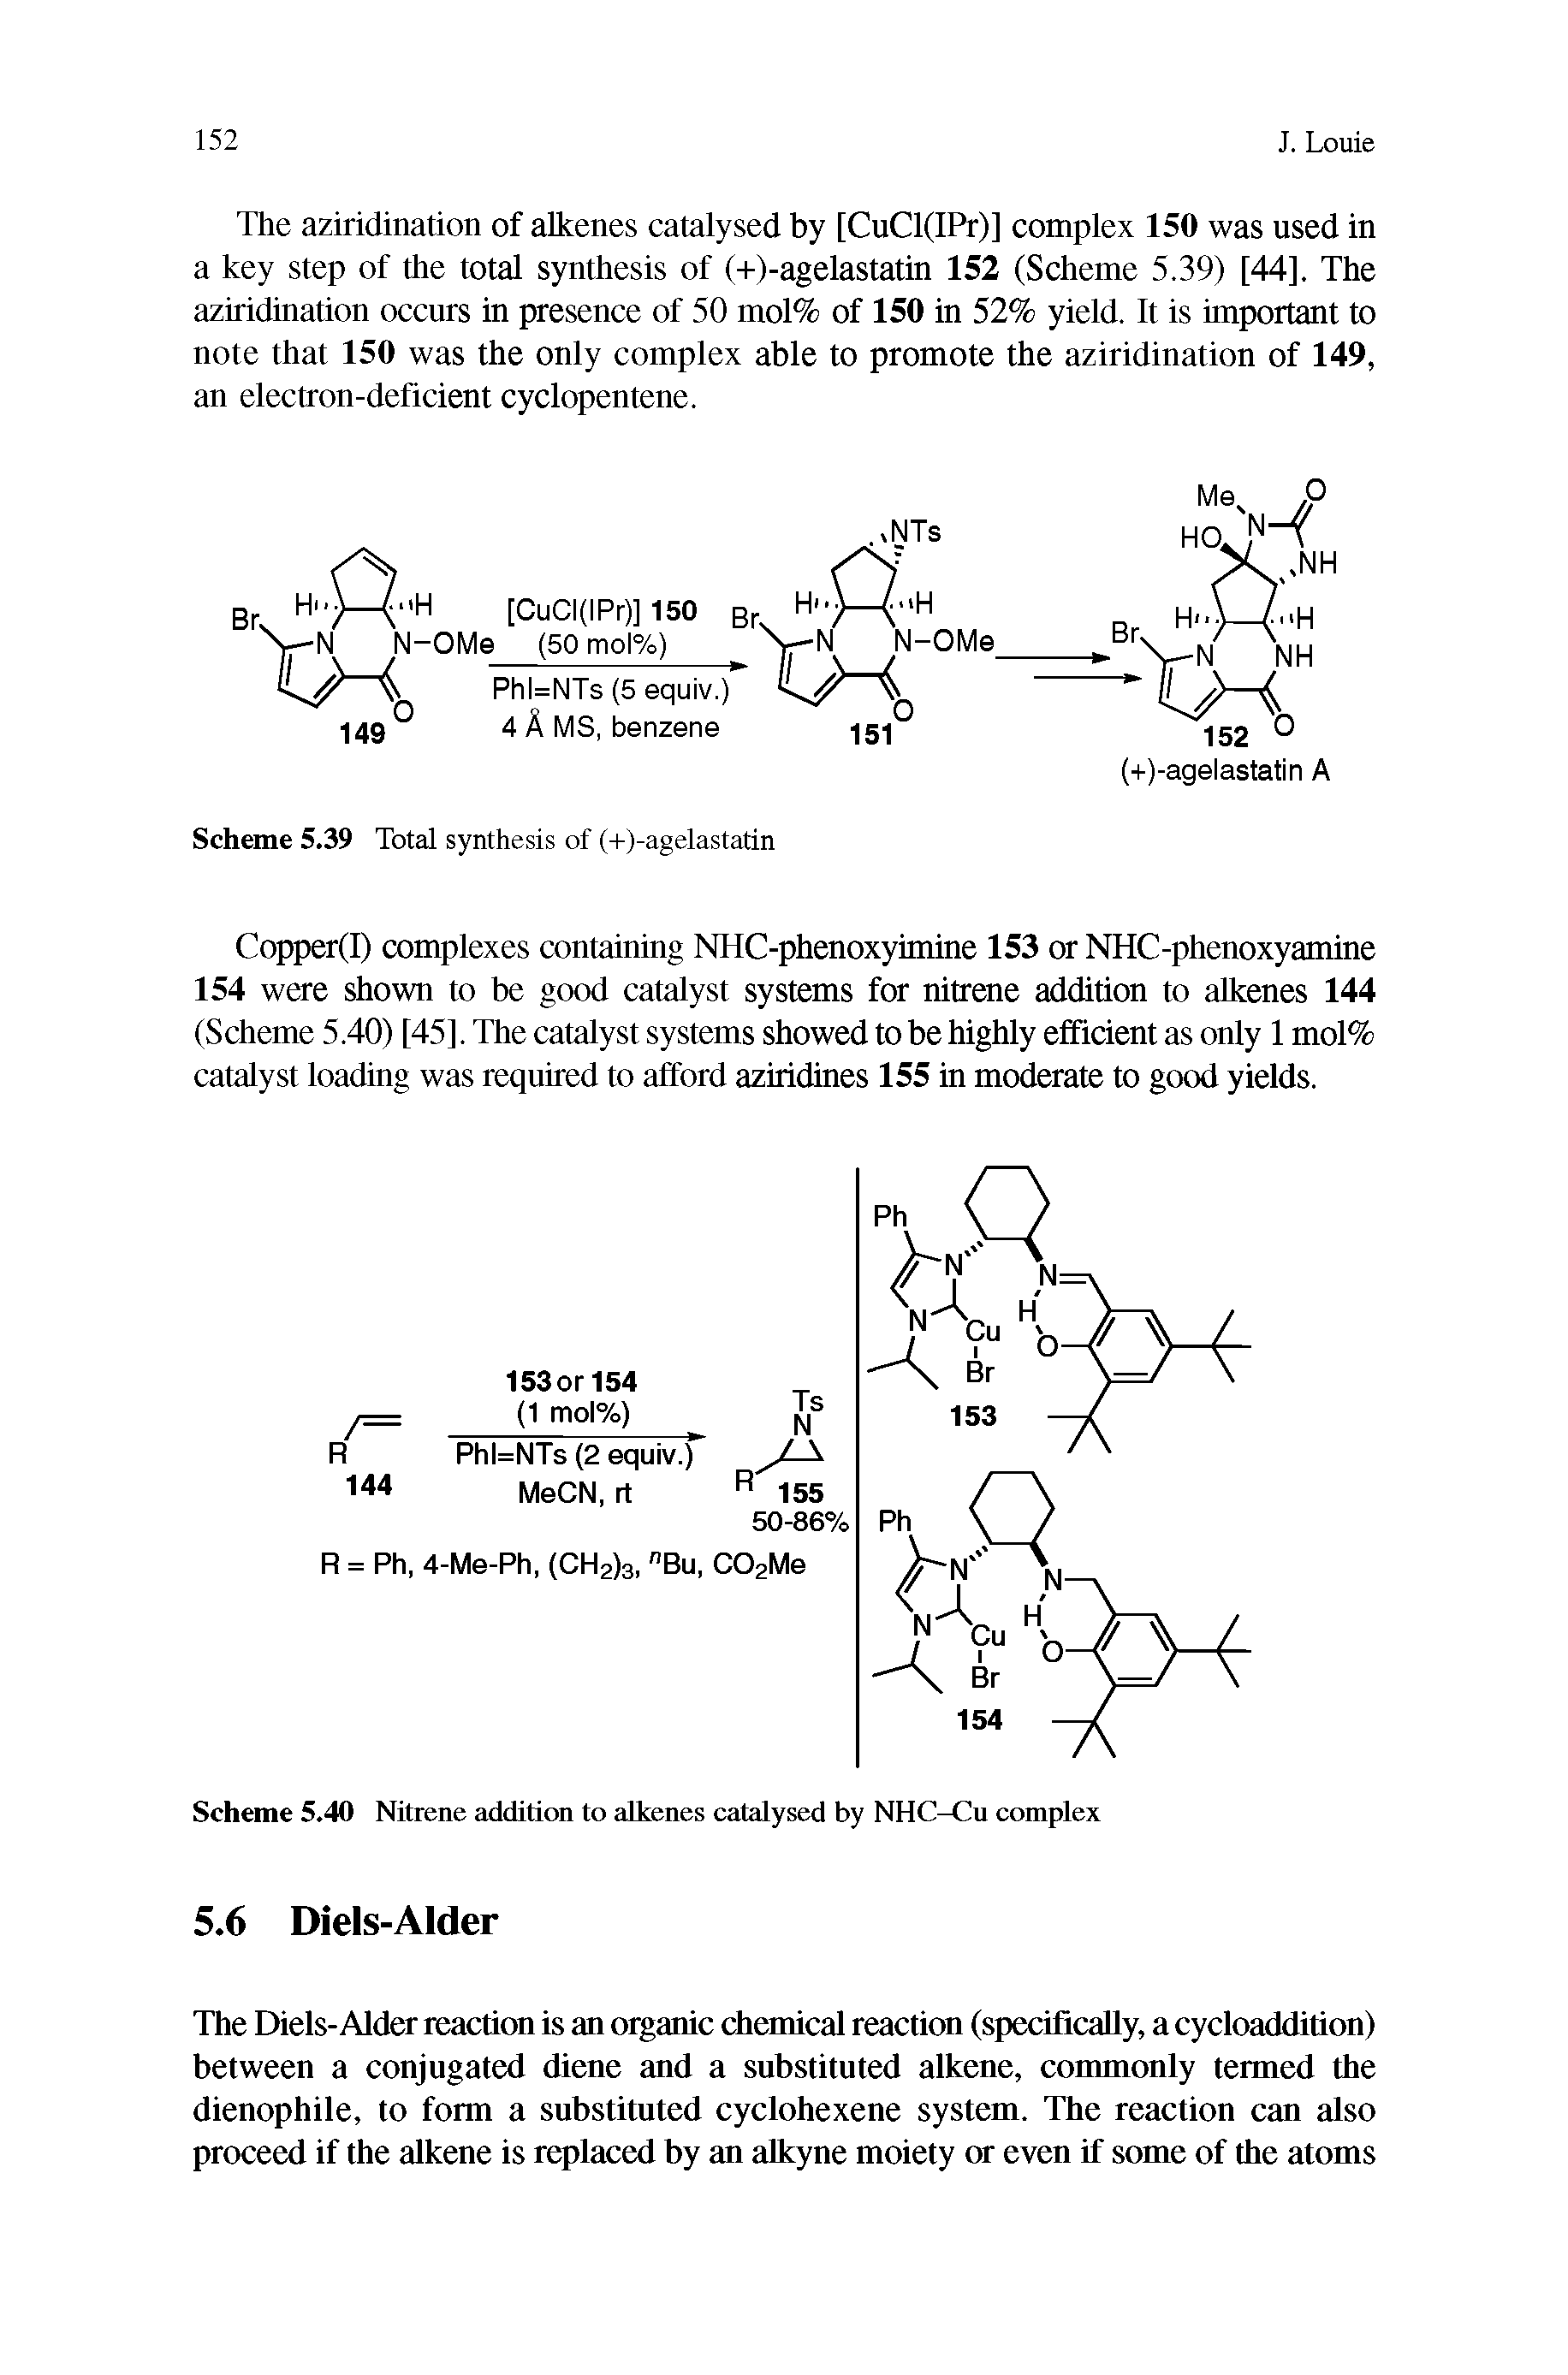 Scheme 5.40 Nitrene addition to alkenes catalysed by NHC-Cu complex...